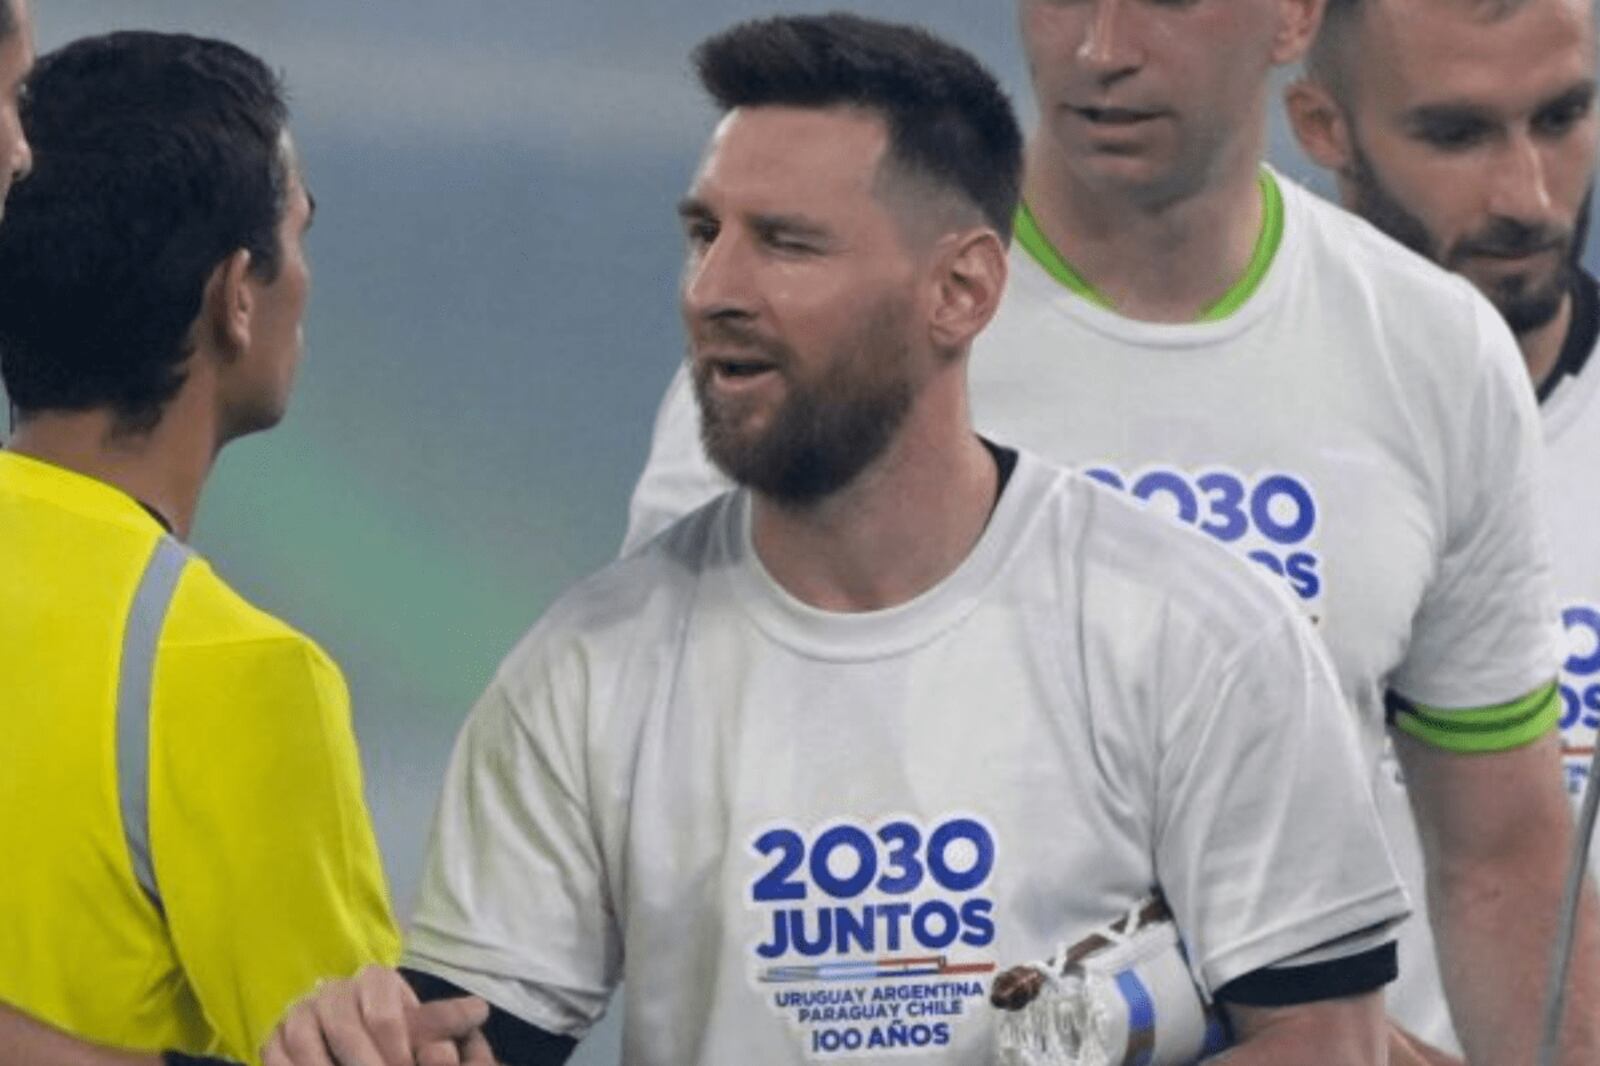 La exigencia de Lionel Messi a FIFA para el Mundial 2030